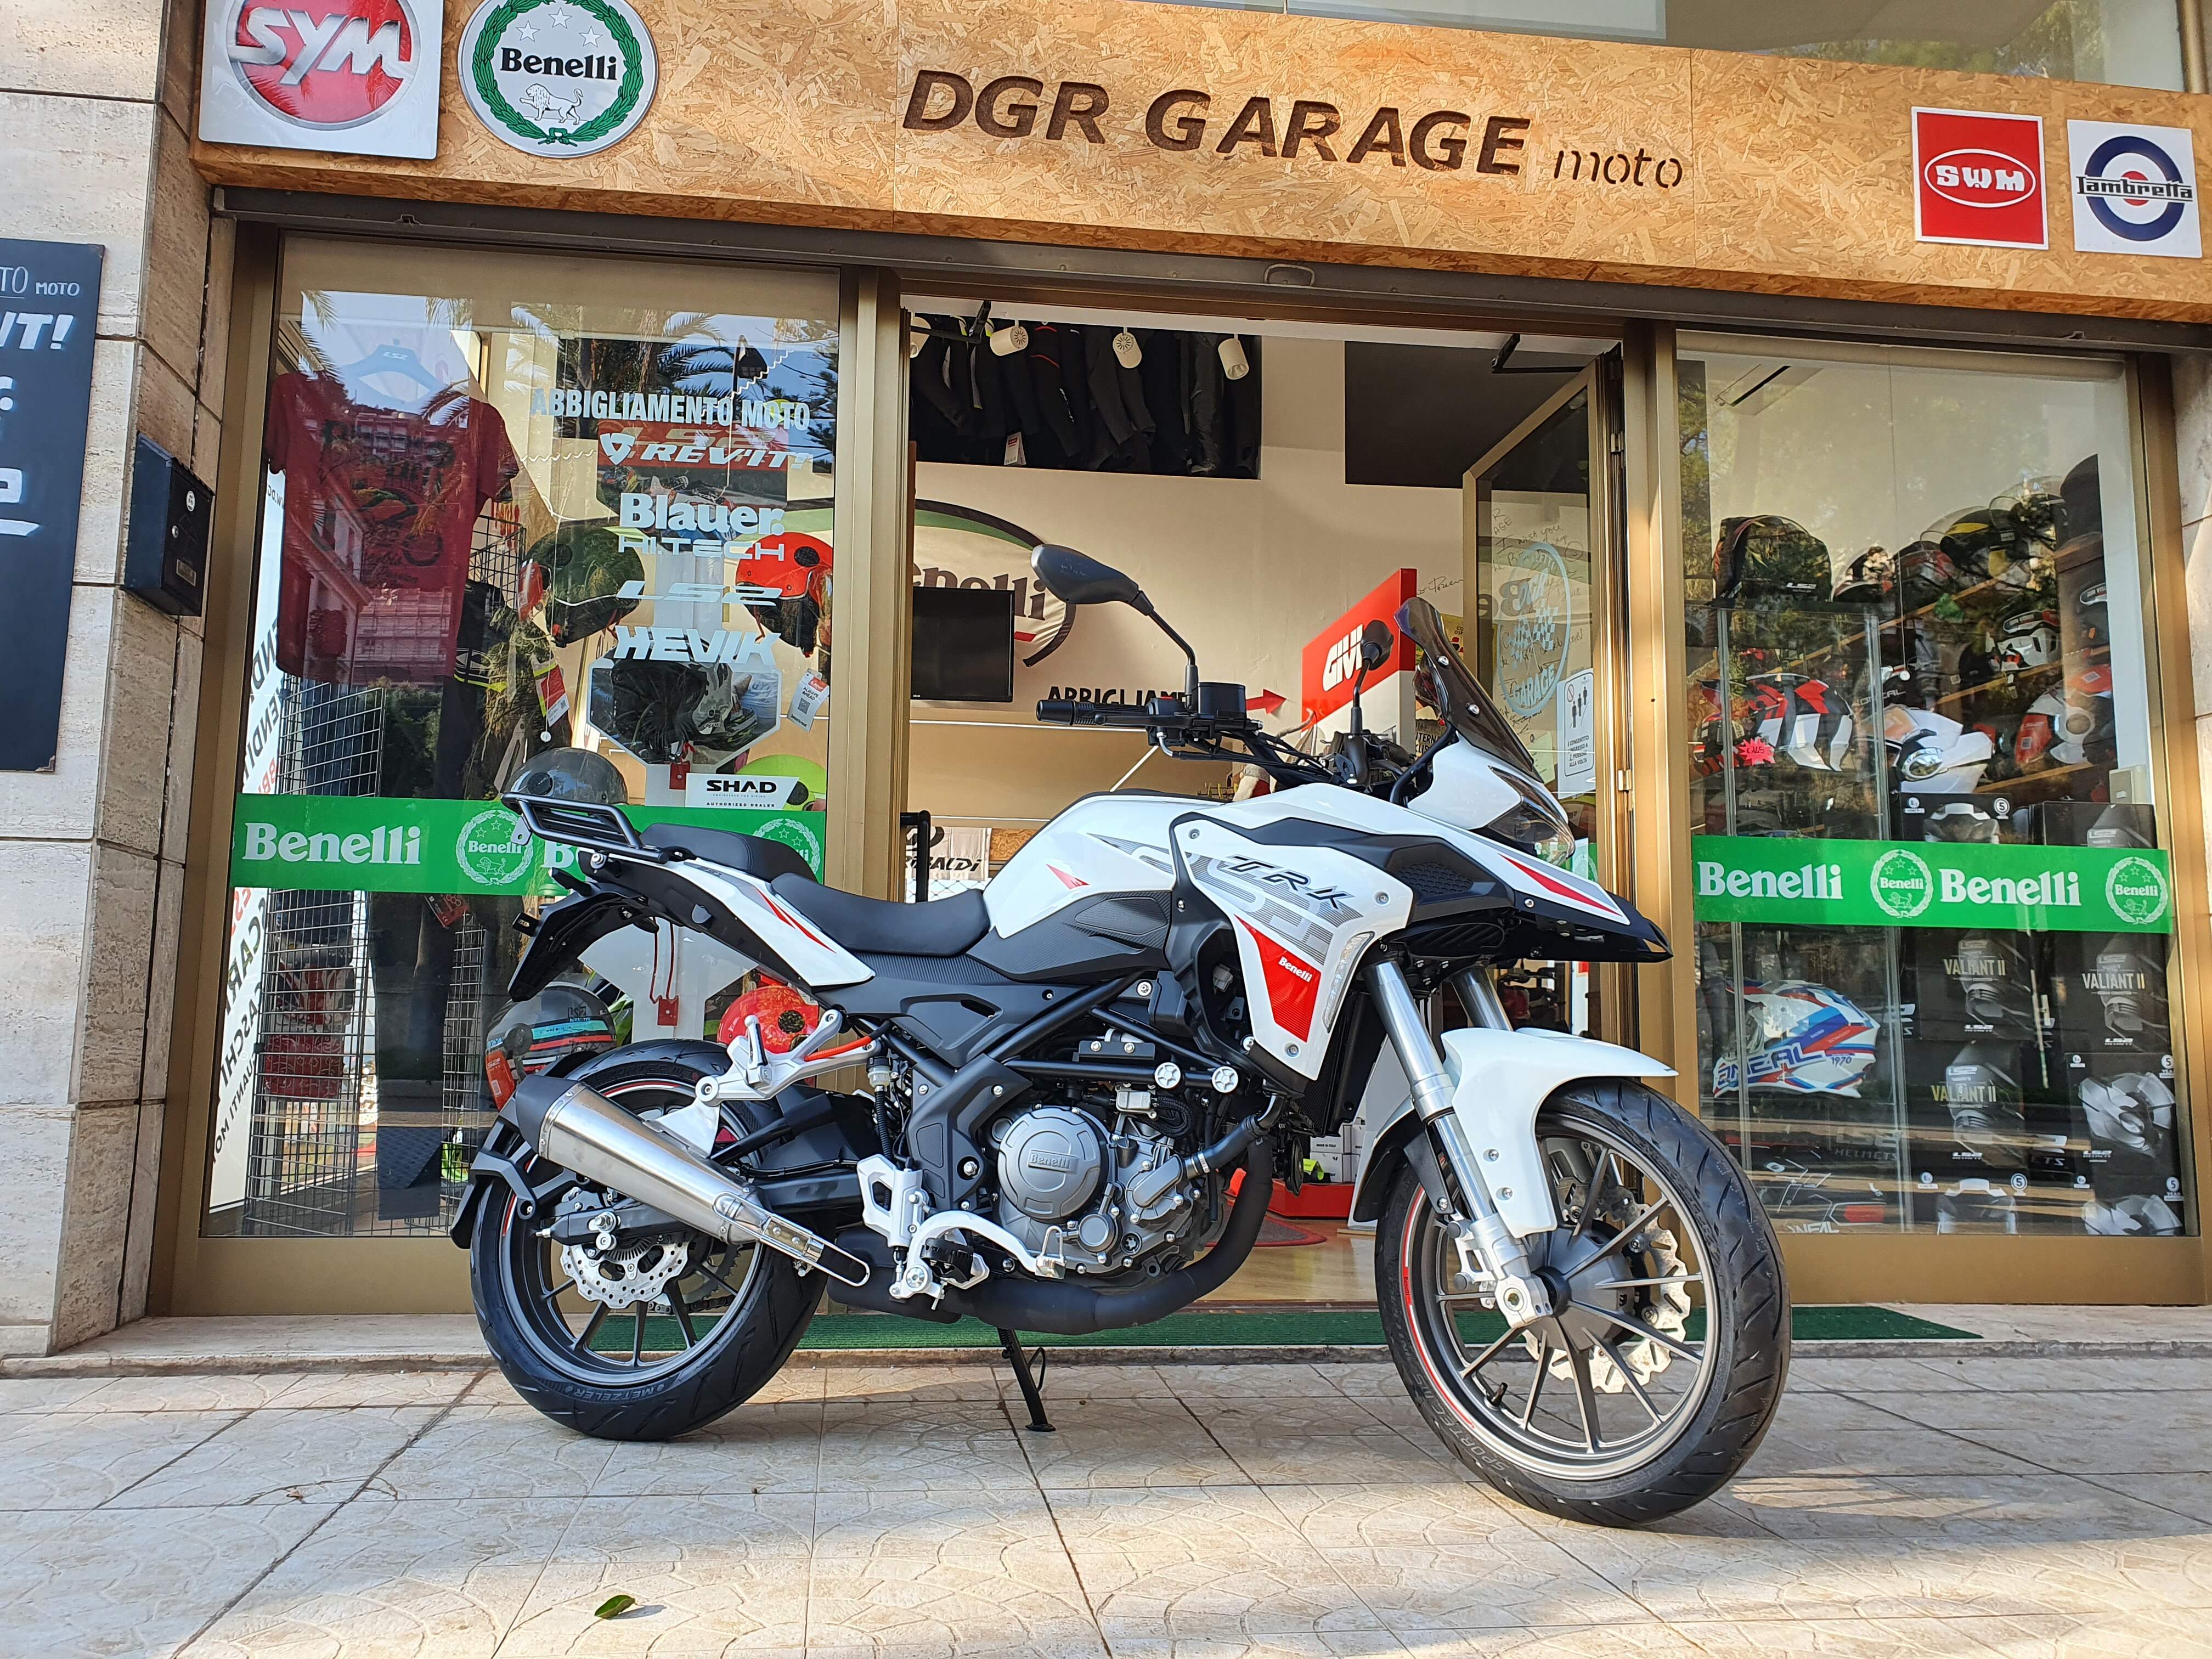 Benelli TRK 250 DGR Garage moto